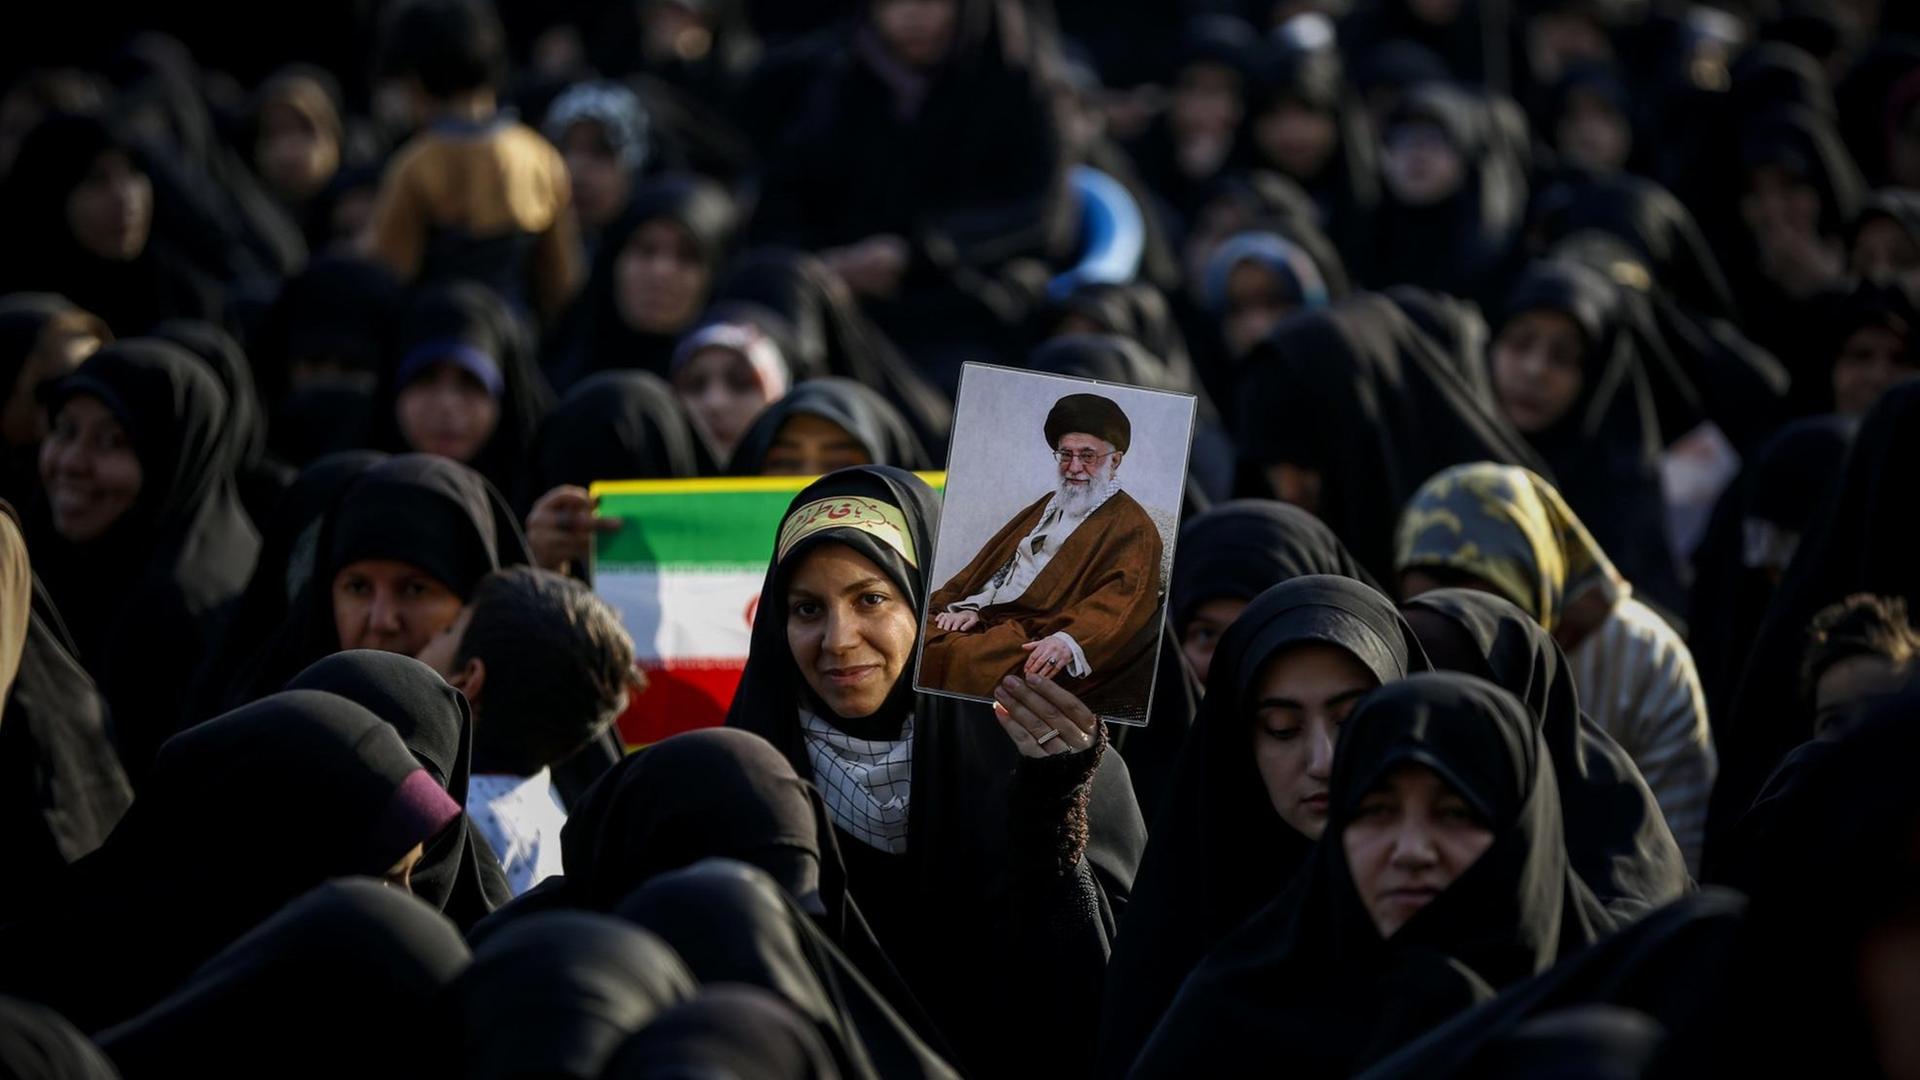 Frauen und Mädchen stehen am 31. Januar 2019 zusammen. Eine hält eine iranische Flagge hoch, eine andere das Bild von Revolutionsführer Ayatollah Khomeini